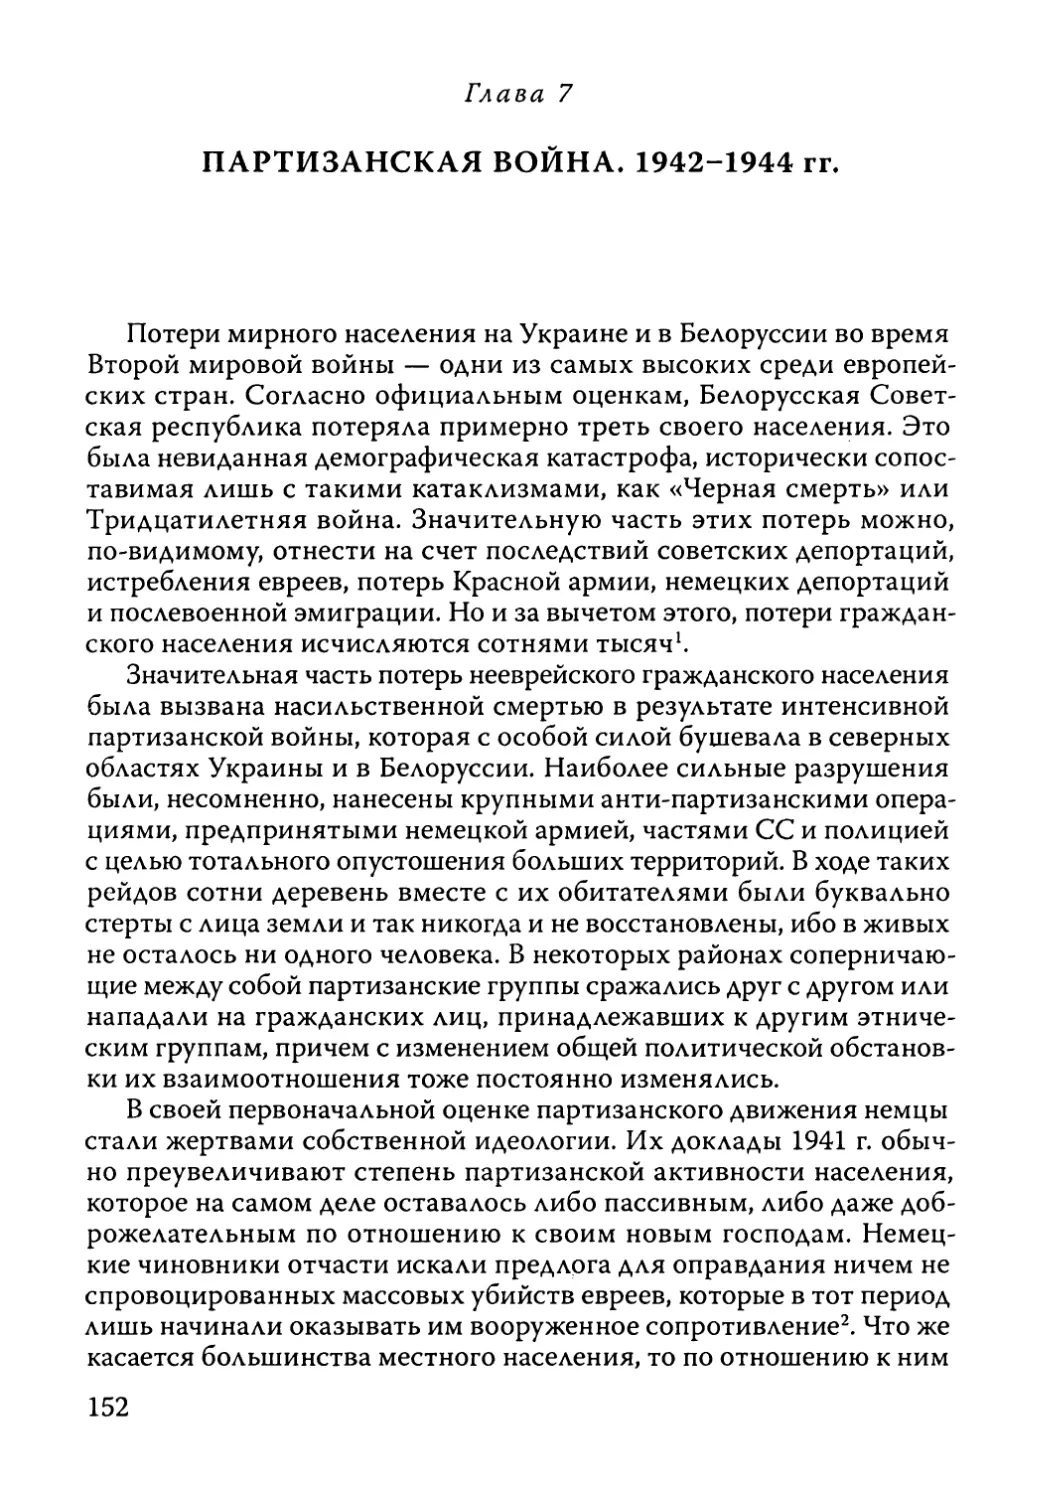 Глава 7. Партизанская война. 1942-1944 гг